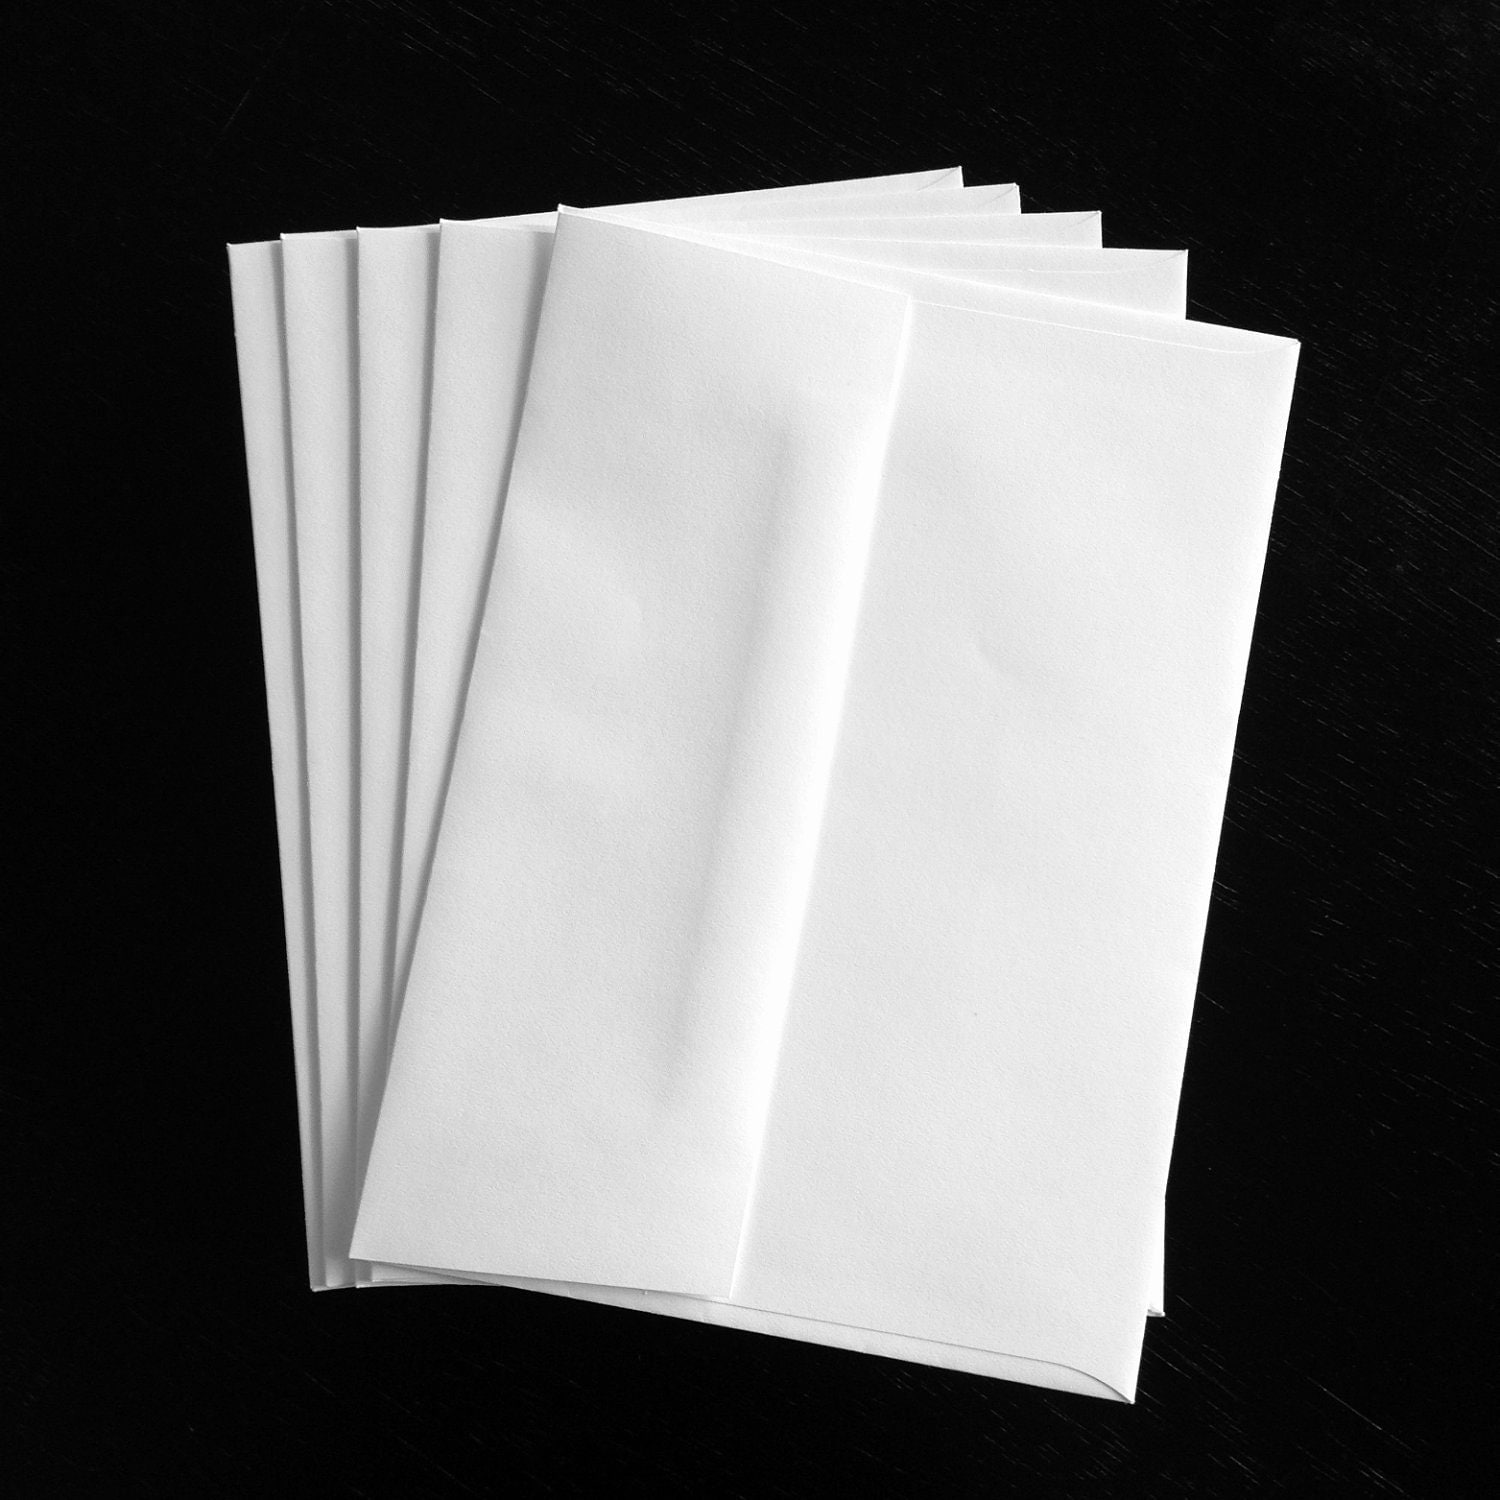 10 White A7 5 25 X 7 25 Standard Size Envelopes By Perchedowl